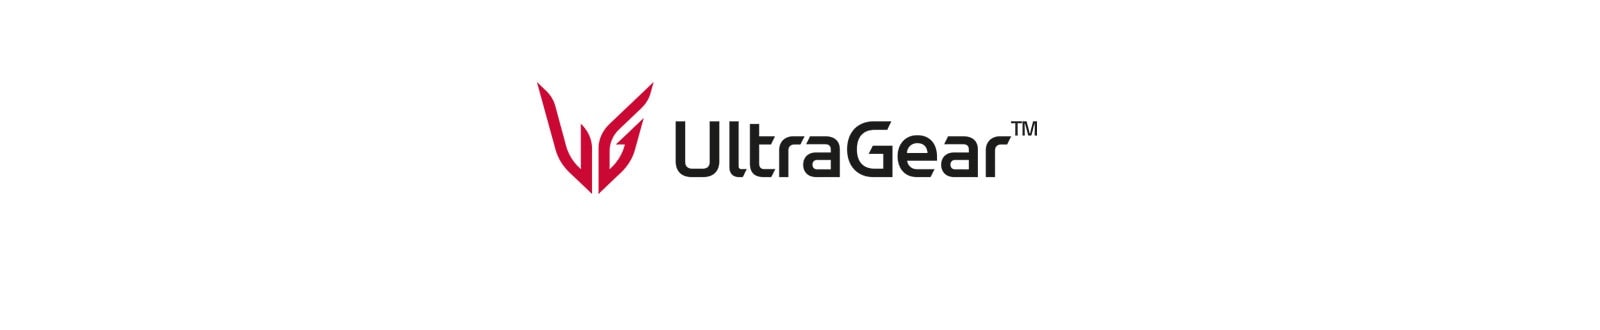 Монитор за игри UltraGear™.